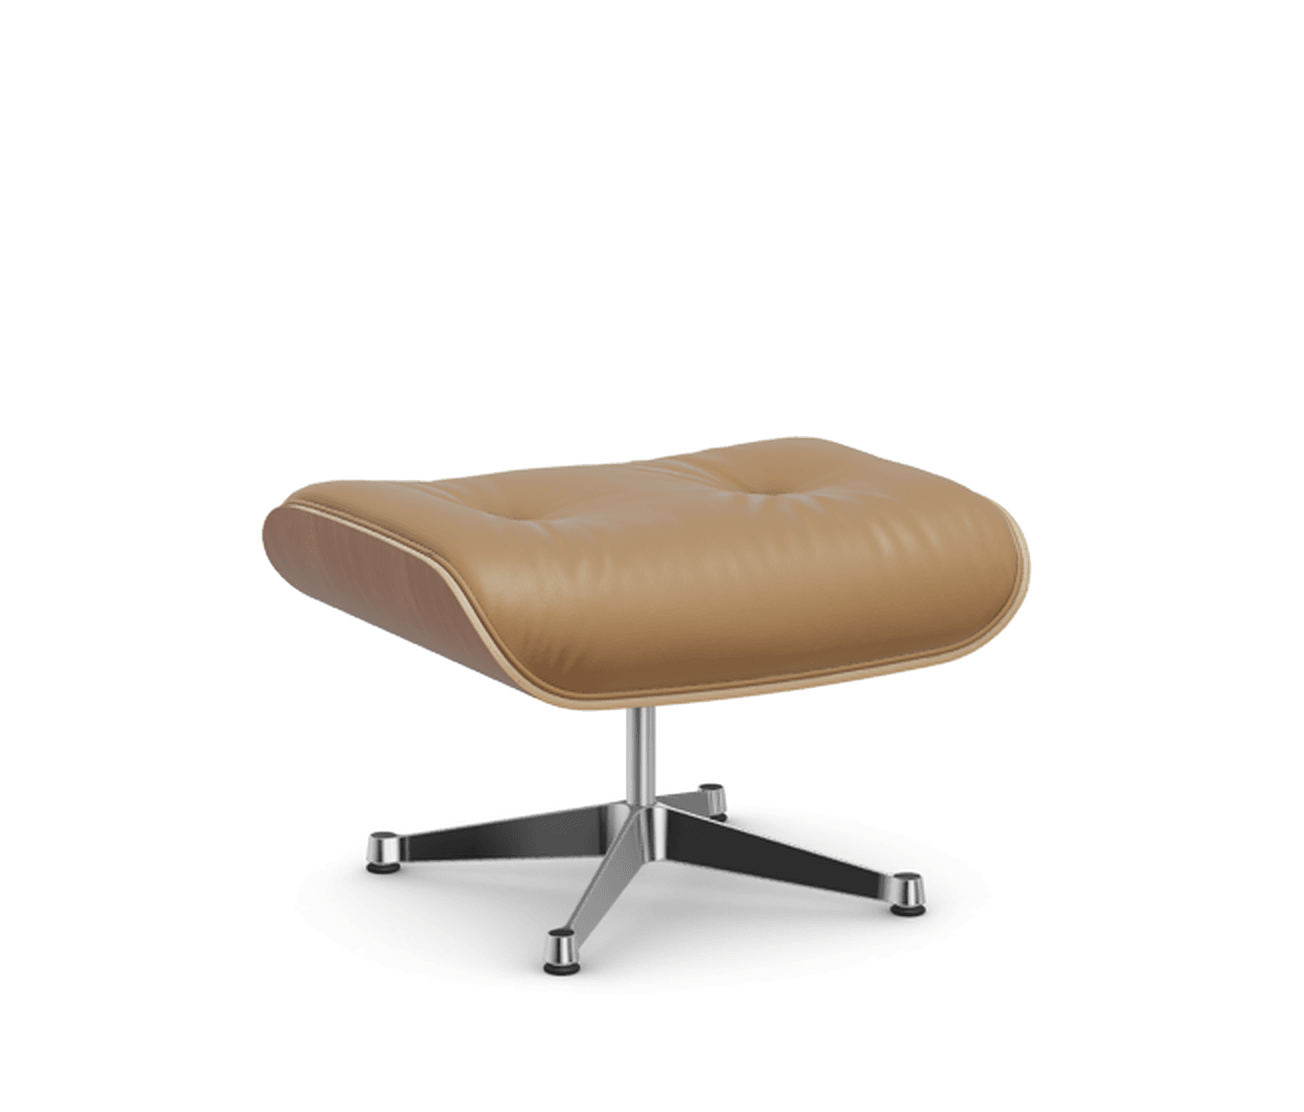 Vitra Lounge Chair Ottoman - 24 Amerikanischer Kirschbaum - Leder natural F 01 caramel -  03 Aluminium poliert --16